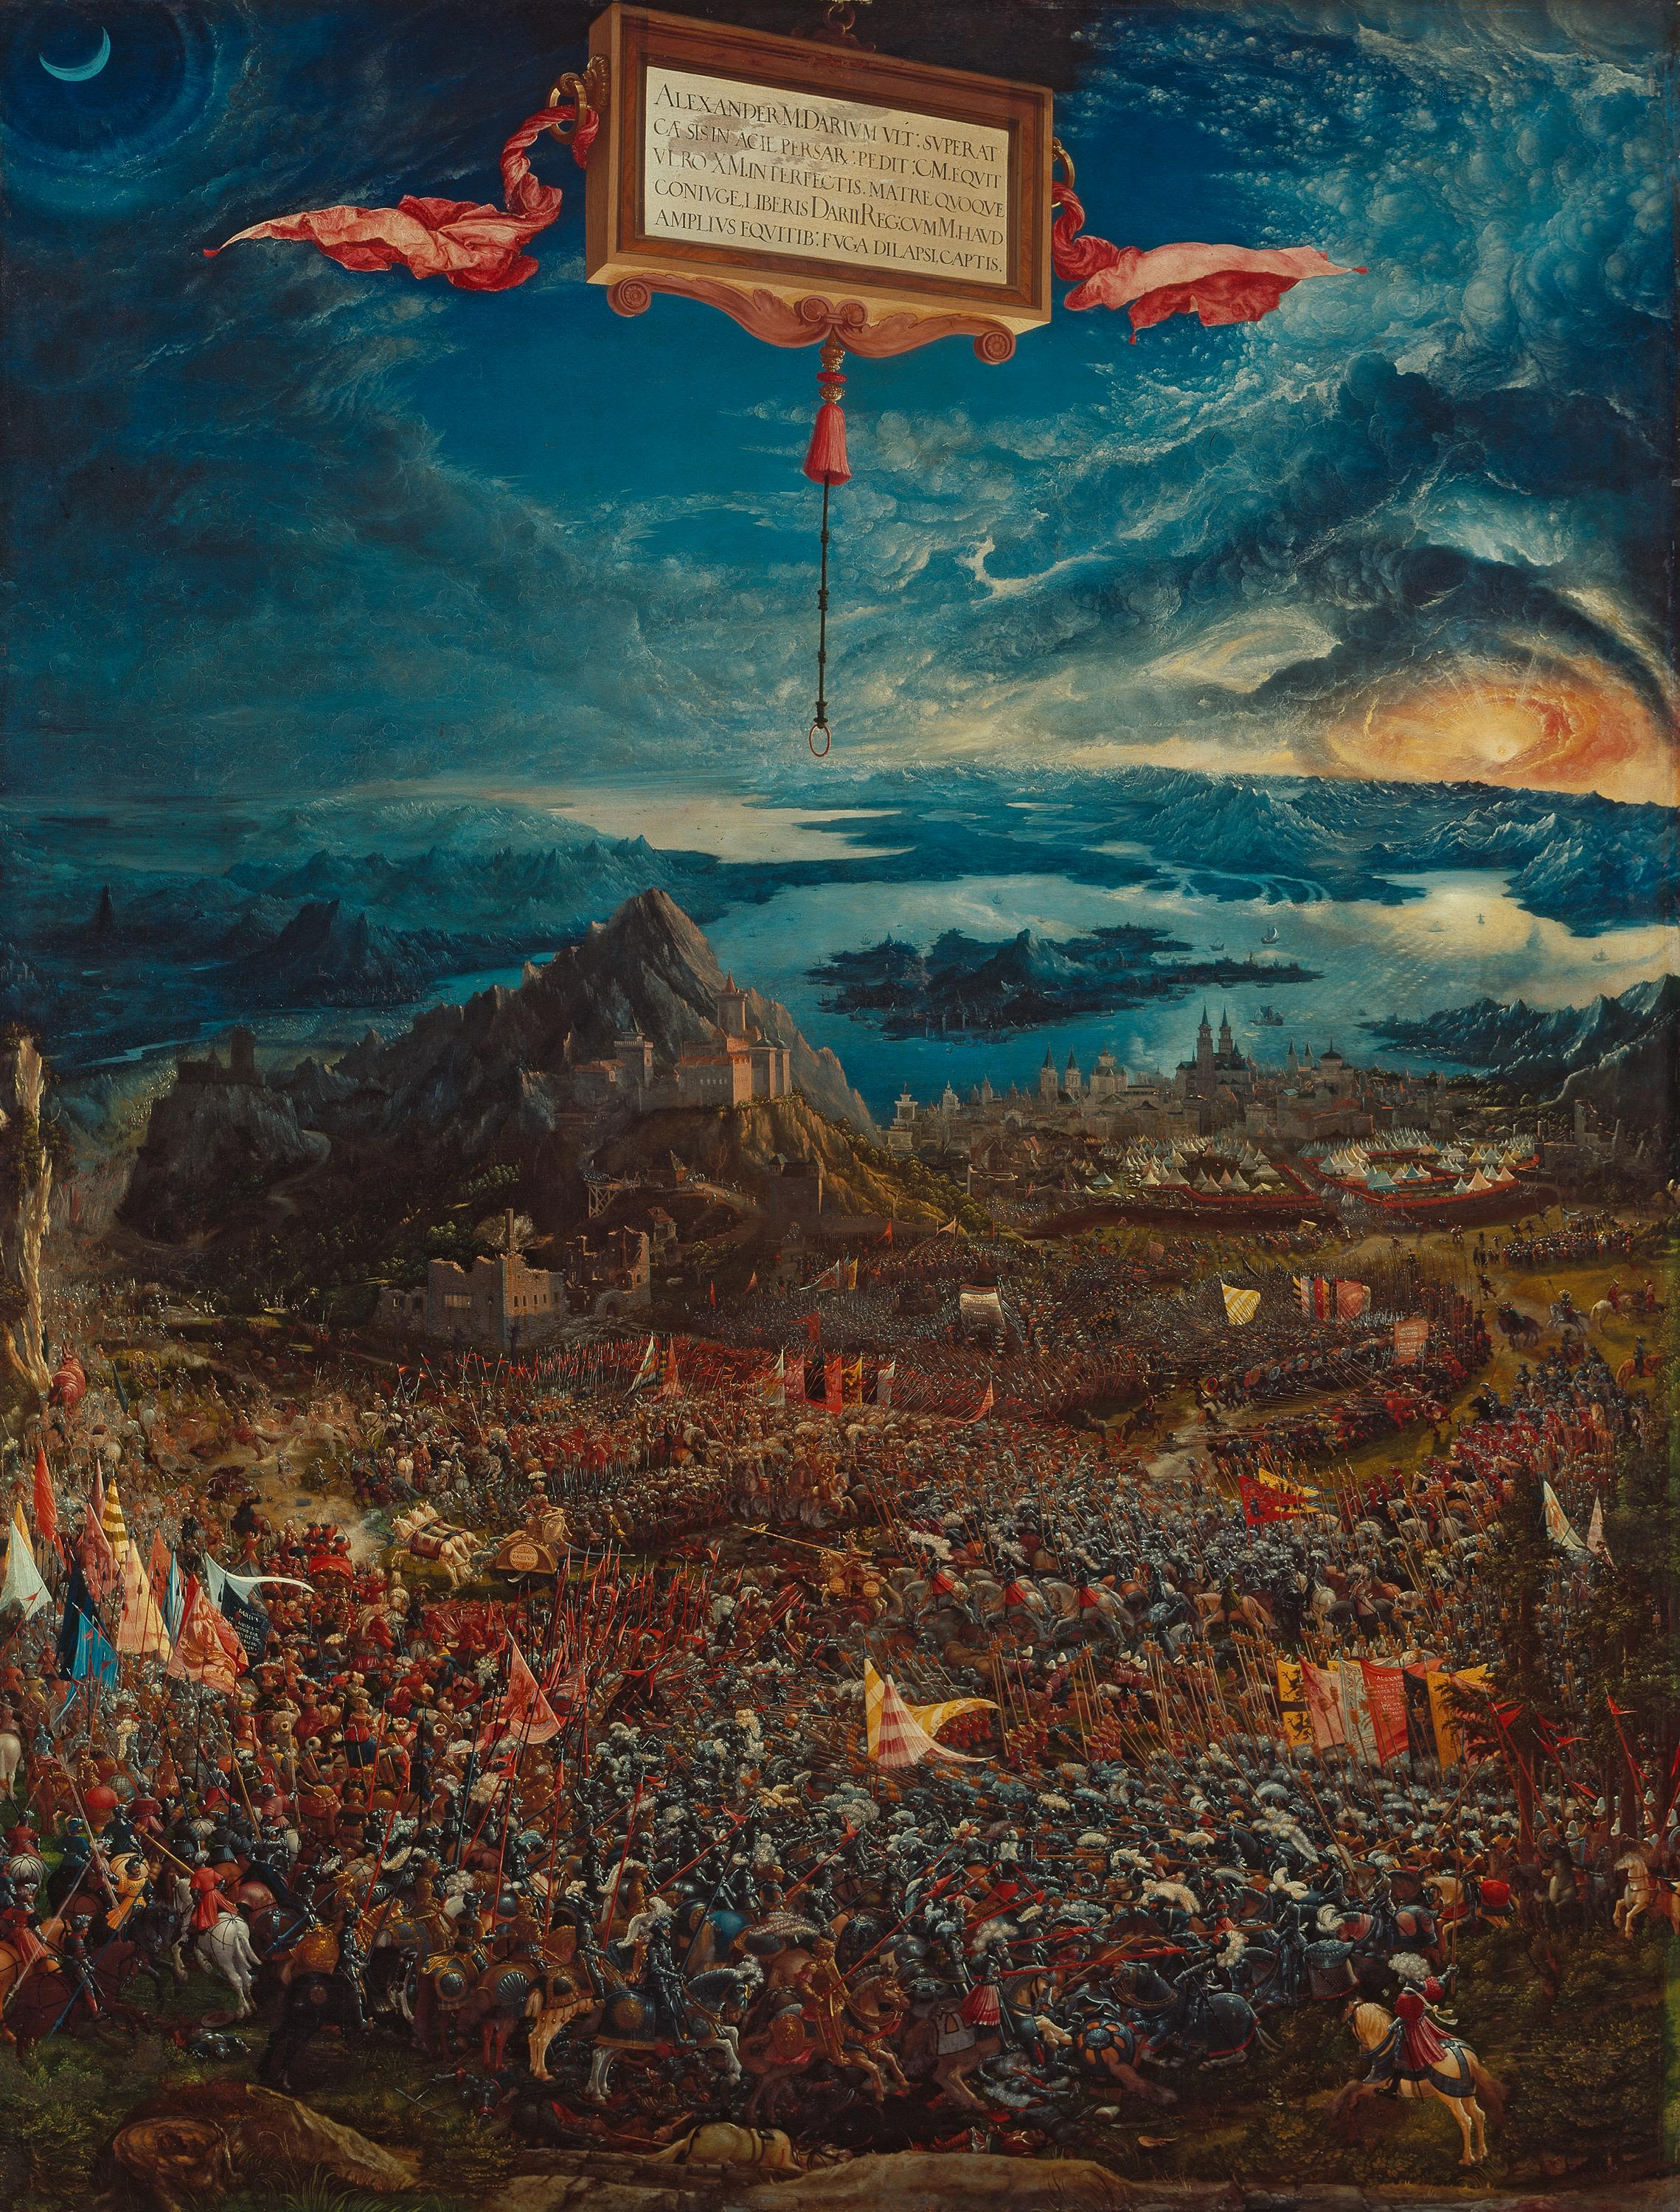 La batalla de Alejandro en Issos by Albrecht Altdorfer - 1529 - 158,4 x 120,3 cm Pinacoteca Antigua de Múnich